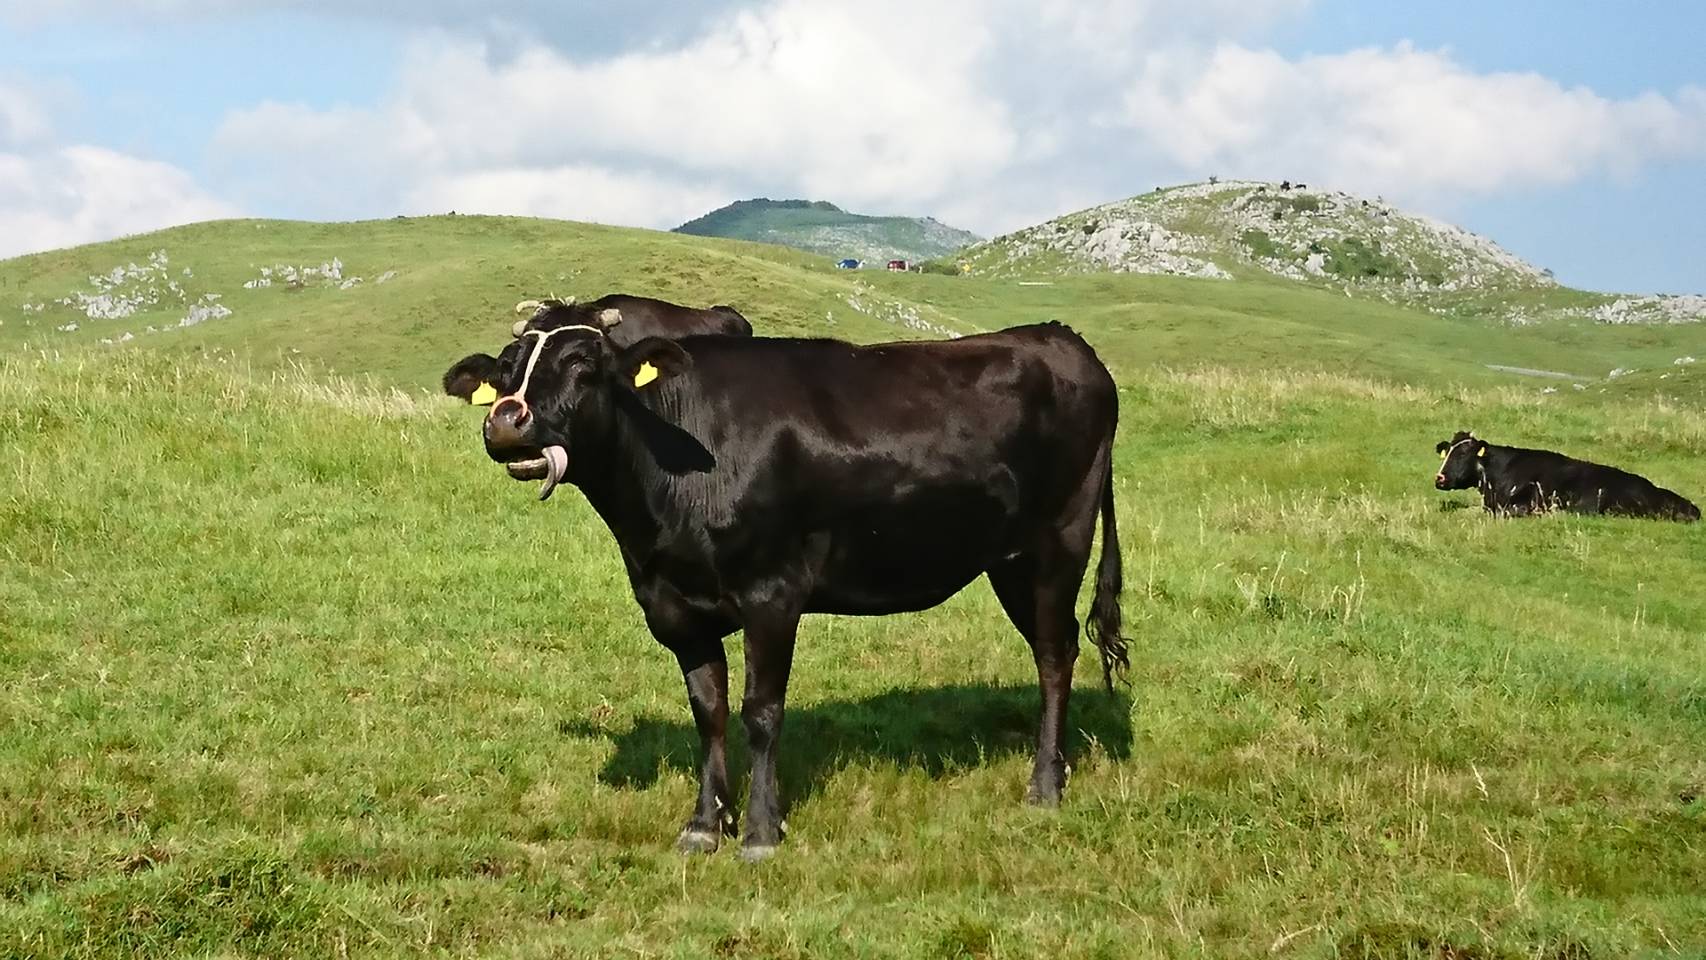 足柄牛の写真です。神奈川県の足柄地域の特産品である「足柄茶」の粉末を与え、健康的に育まれた牛です。